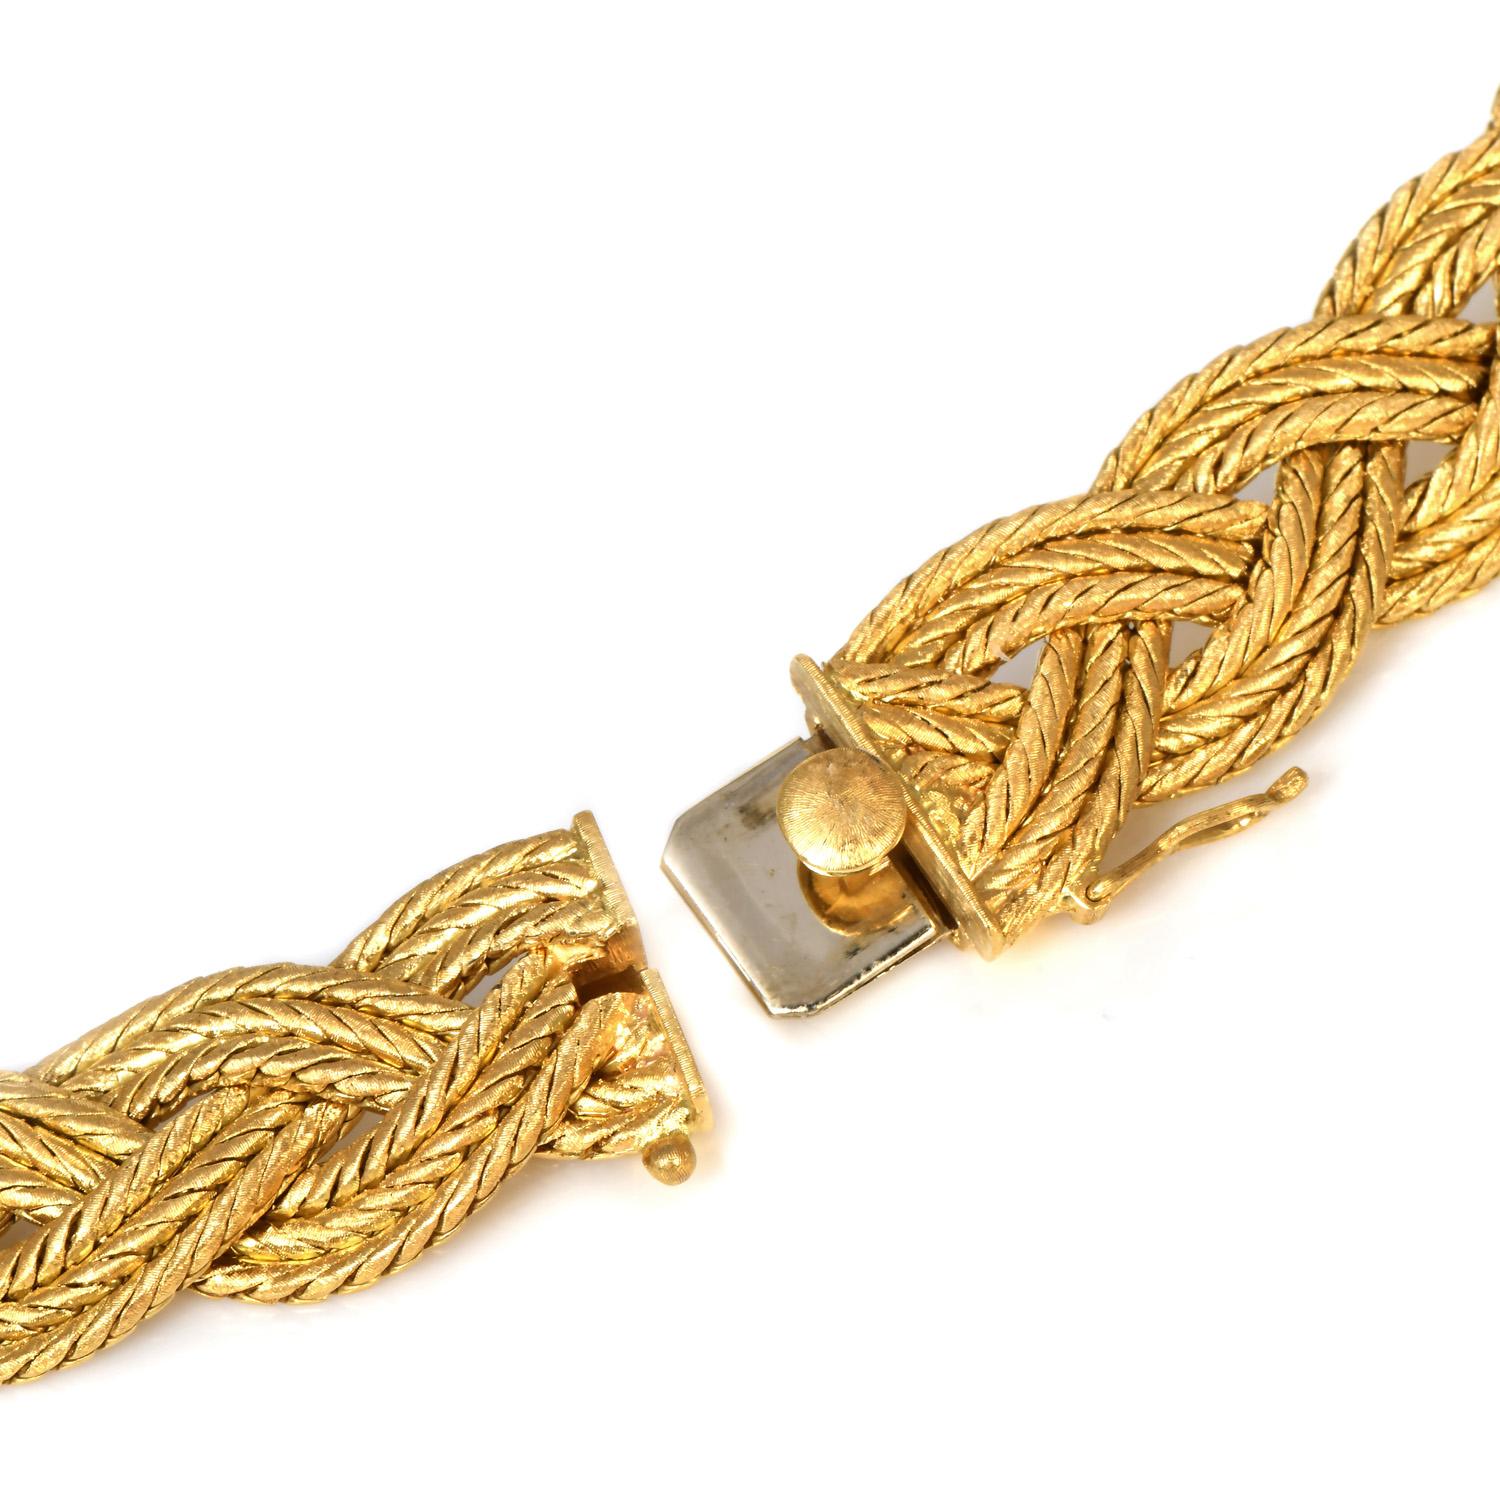 vintage 18k gold necklace